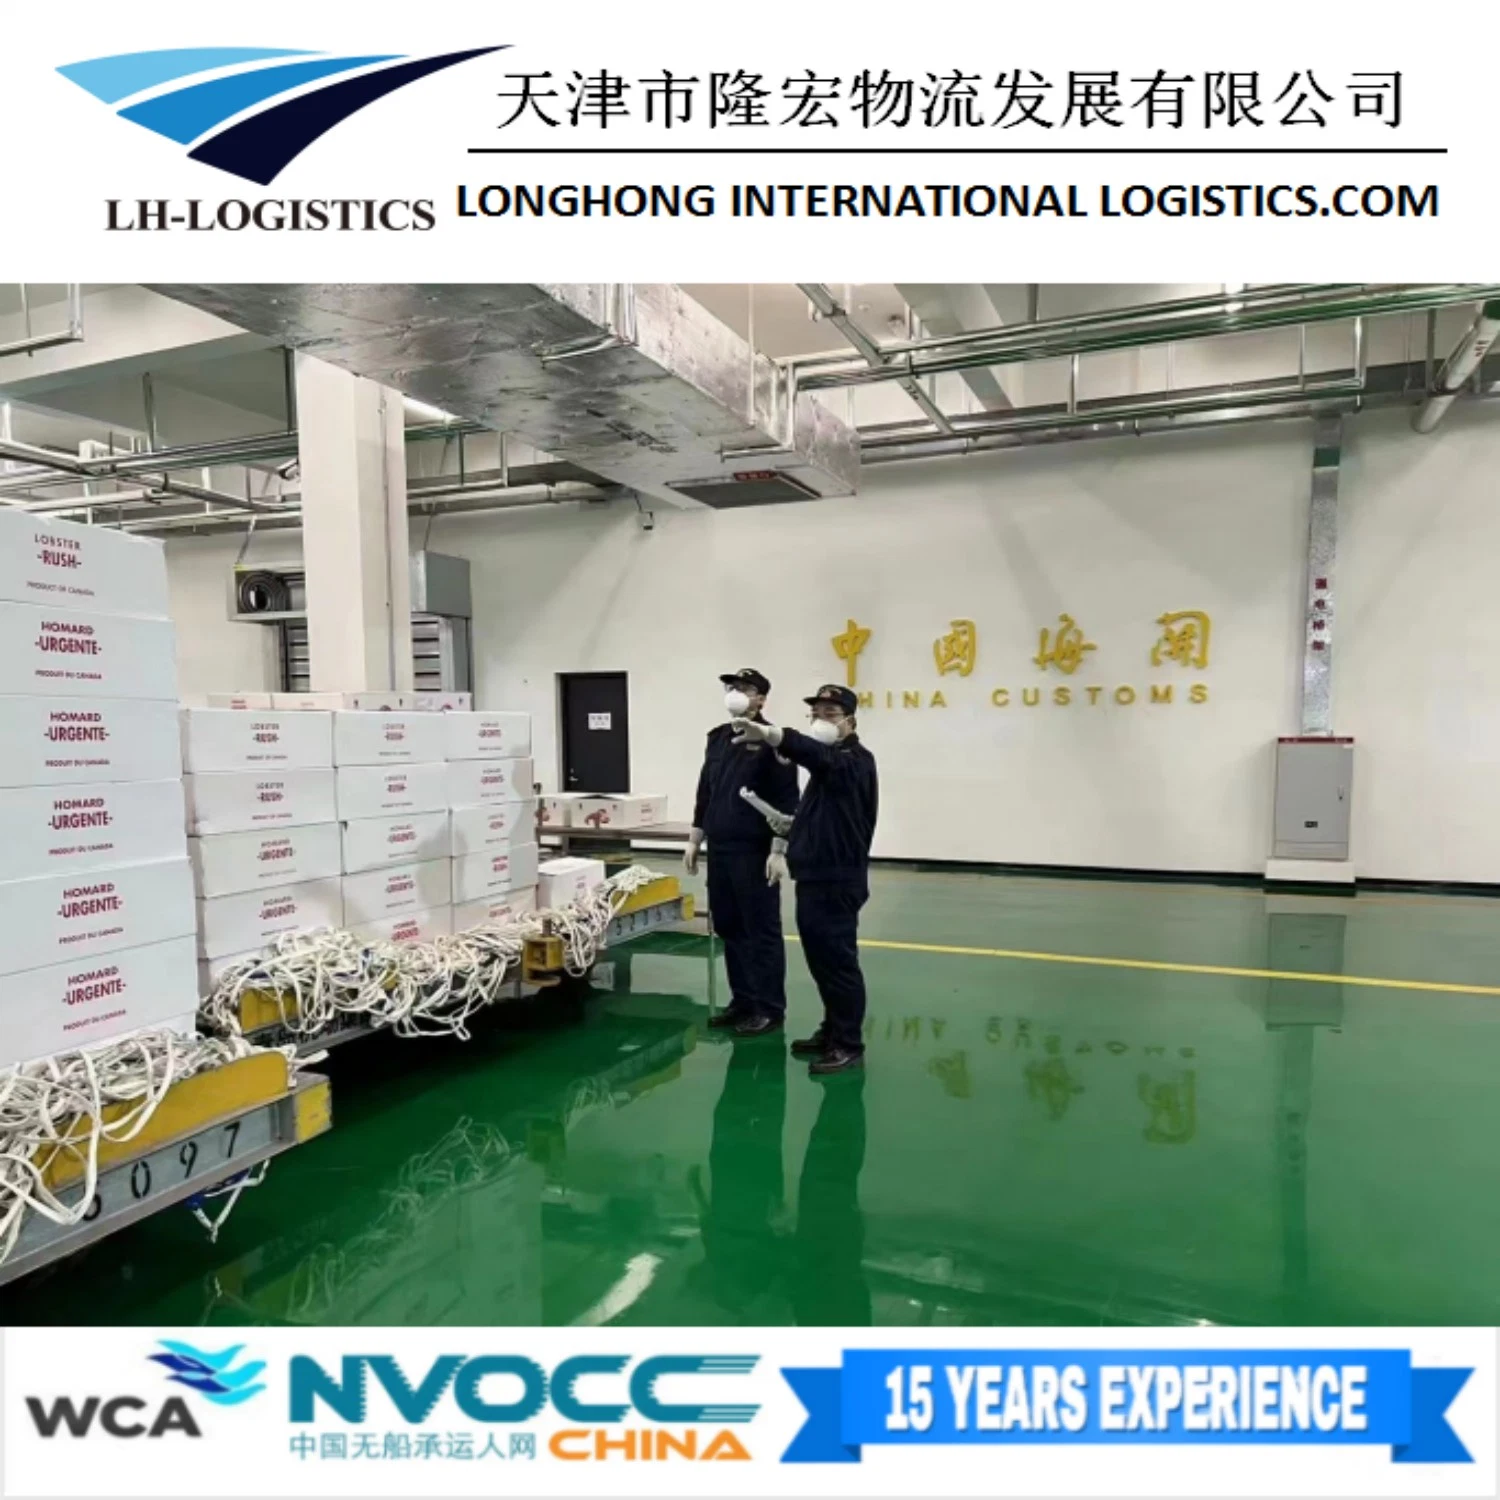 Local Shipping Agent in Tianjin/Shanghai/Qingdao/Shenzhen Customs Clearance 1688